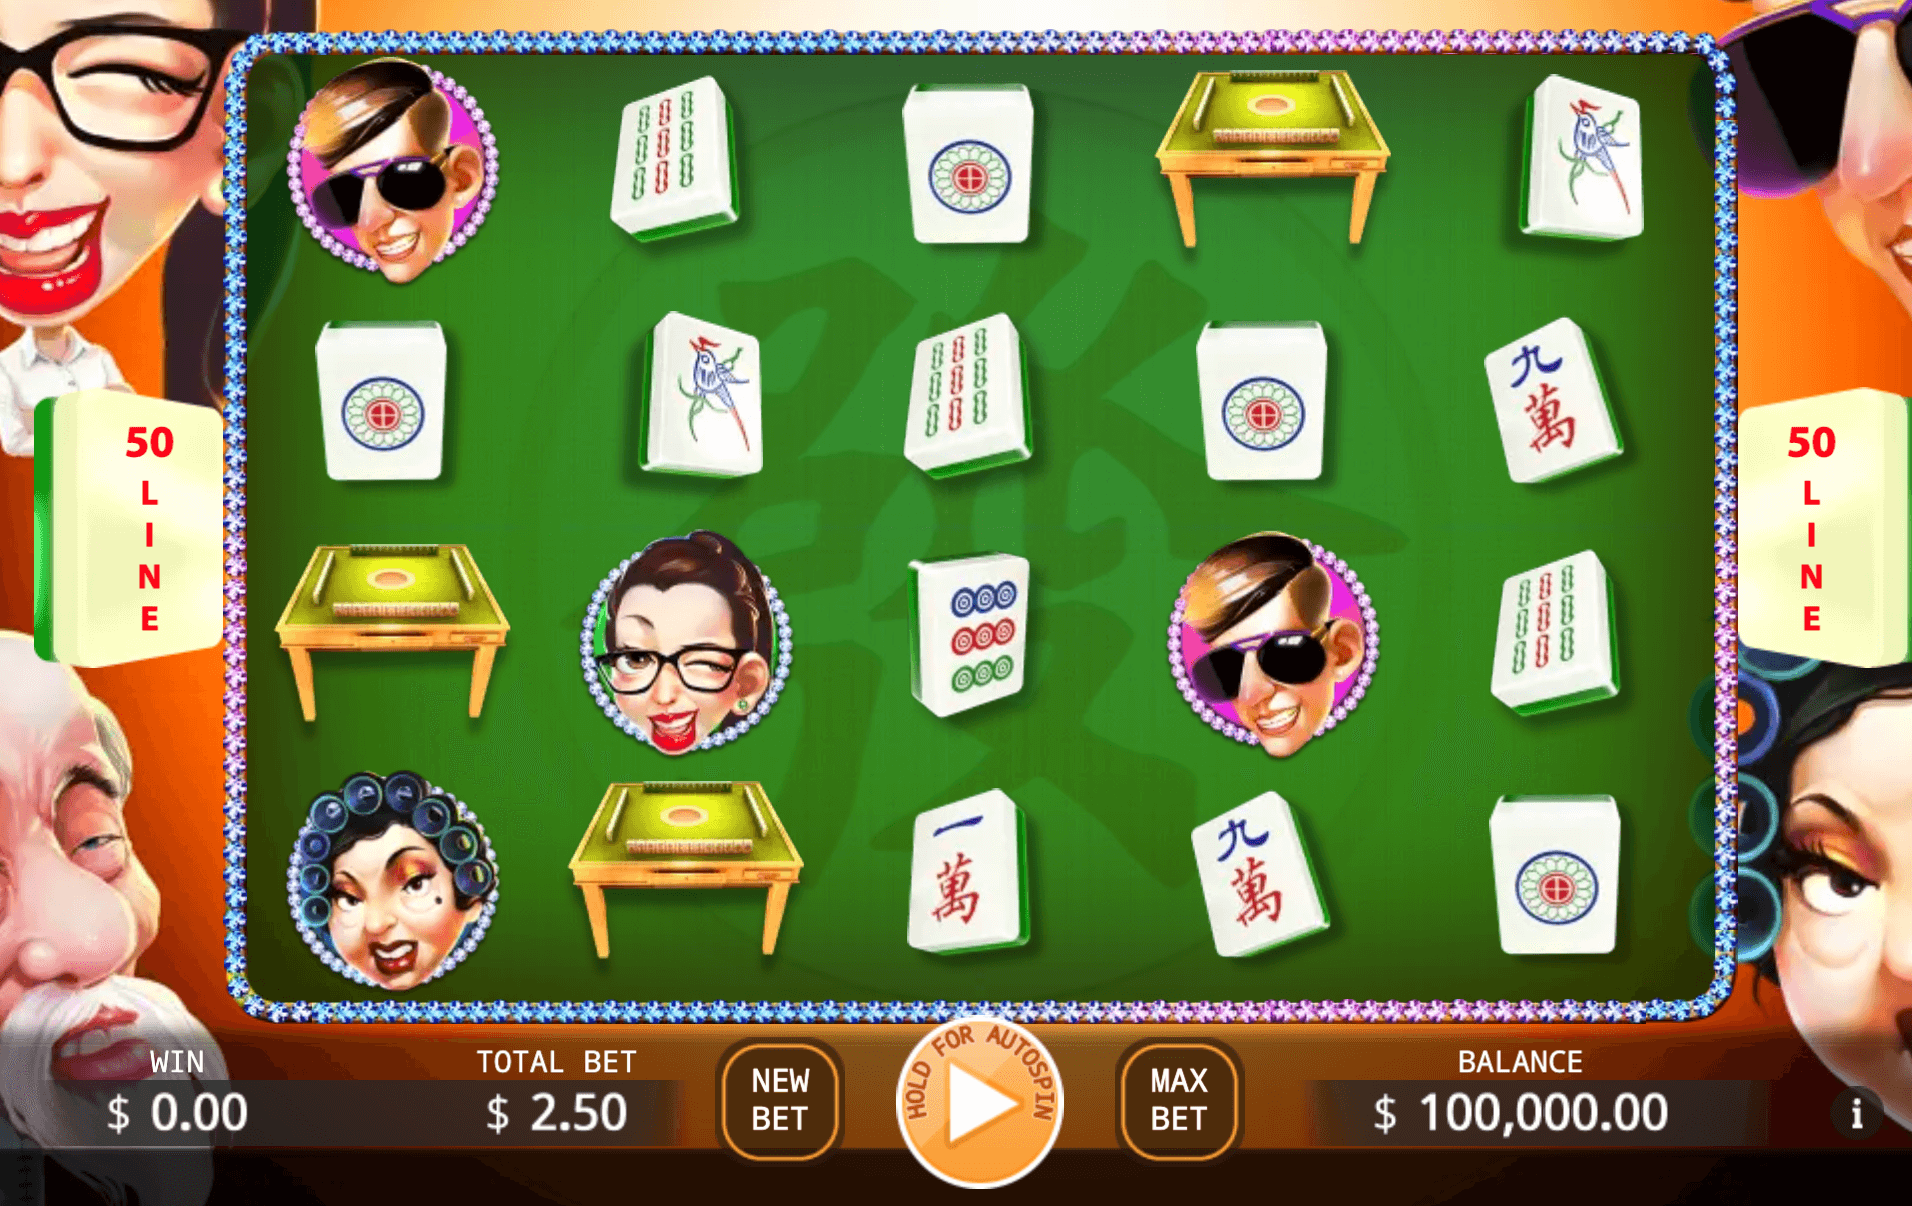 Mahjong Master KA Gaming slotxo cc สมัครสมาชิก รับ 68 บาท